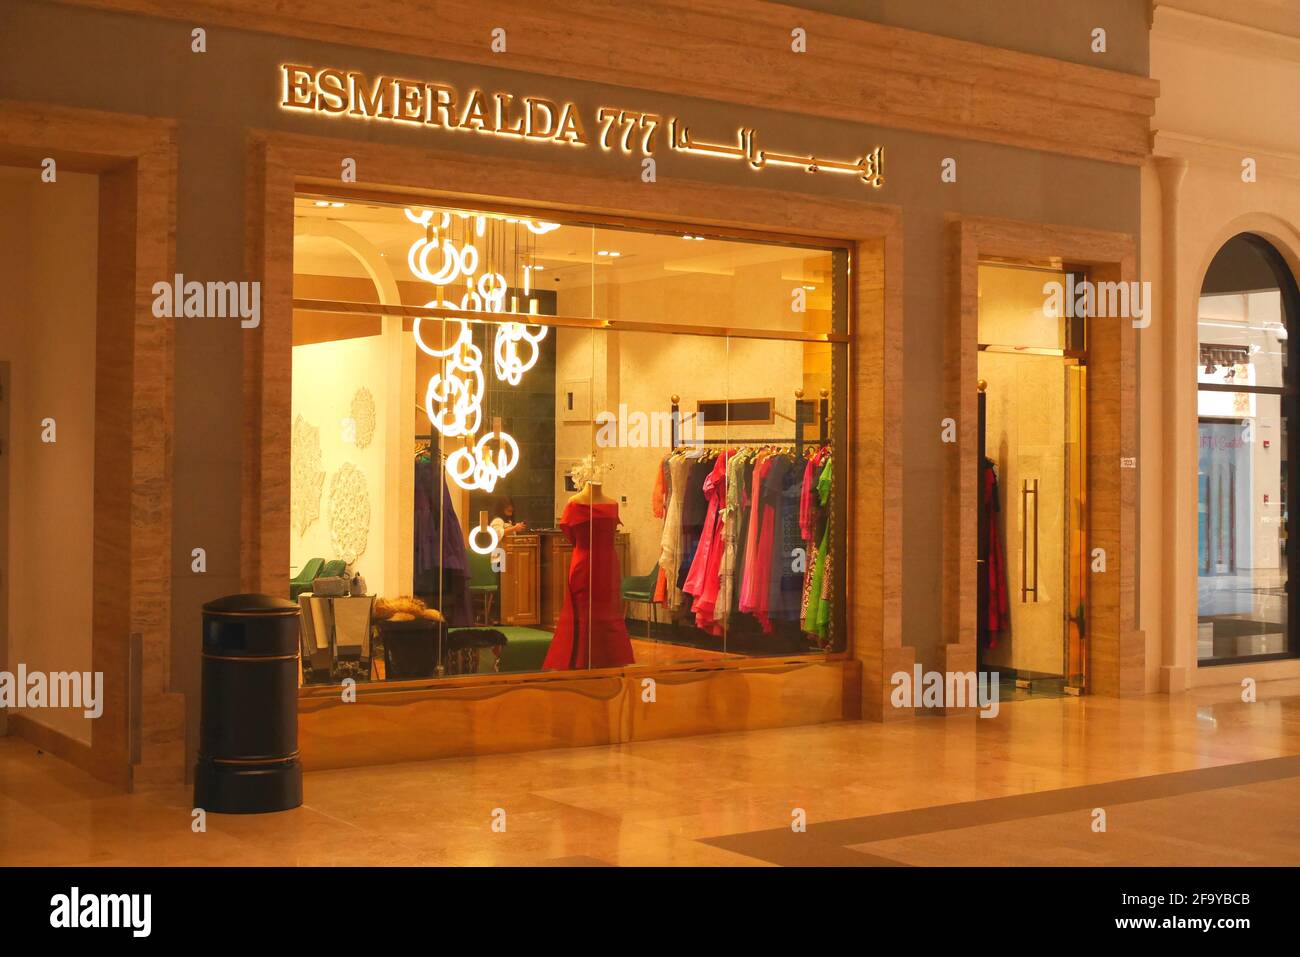 Esmeralda 777 magasin de vêtements, The avenues Mall, Manama, Royaume de Bahreïn Banque D'Images